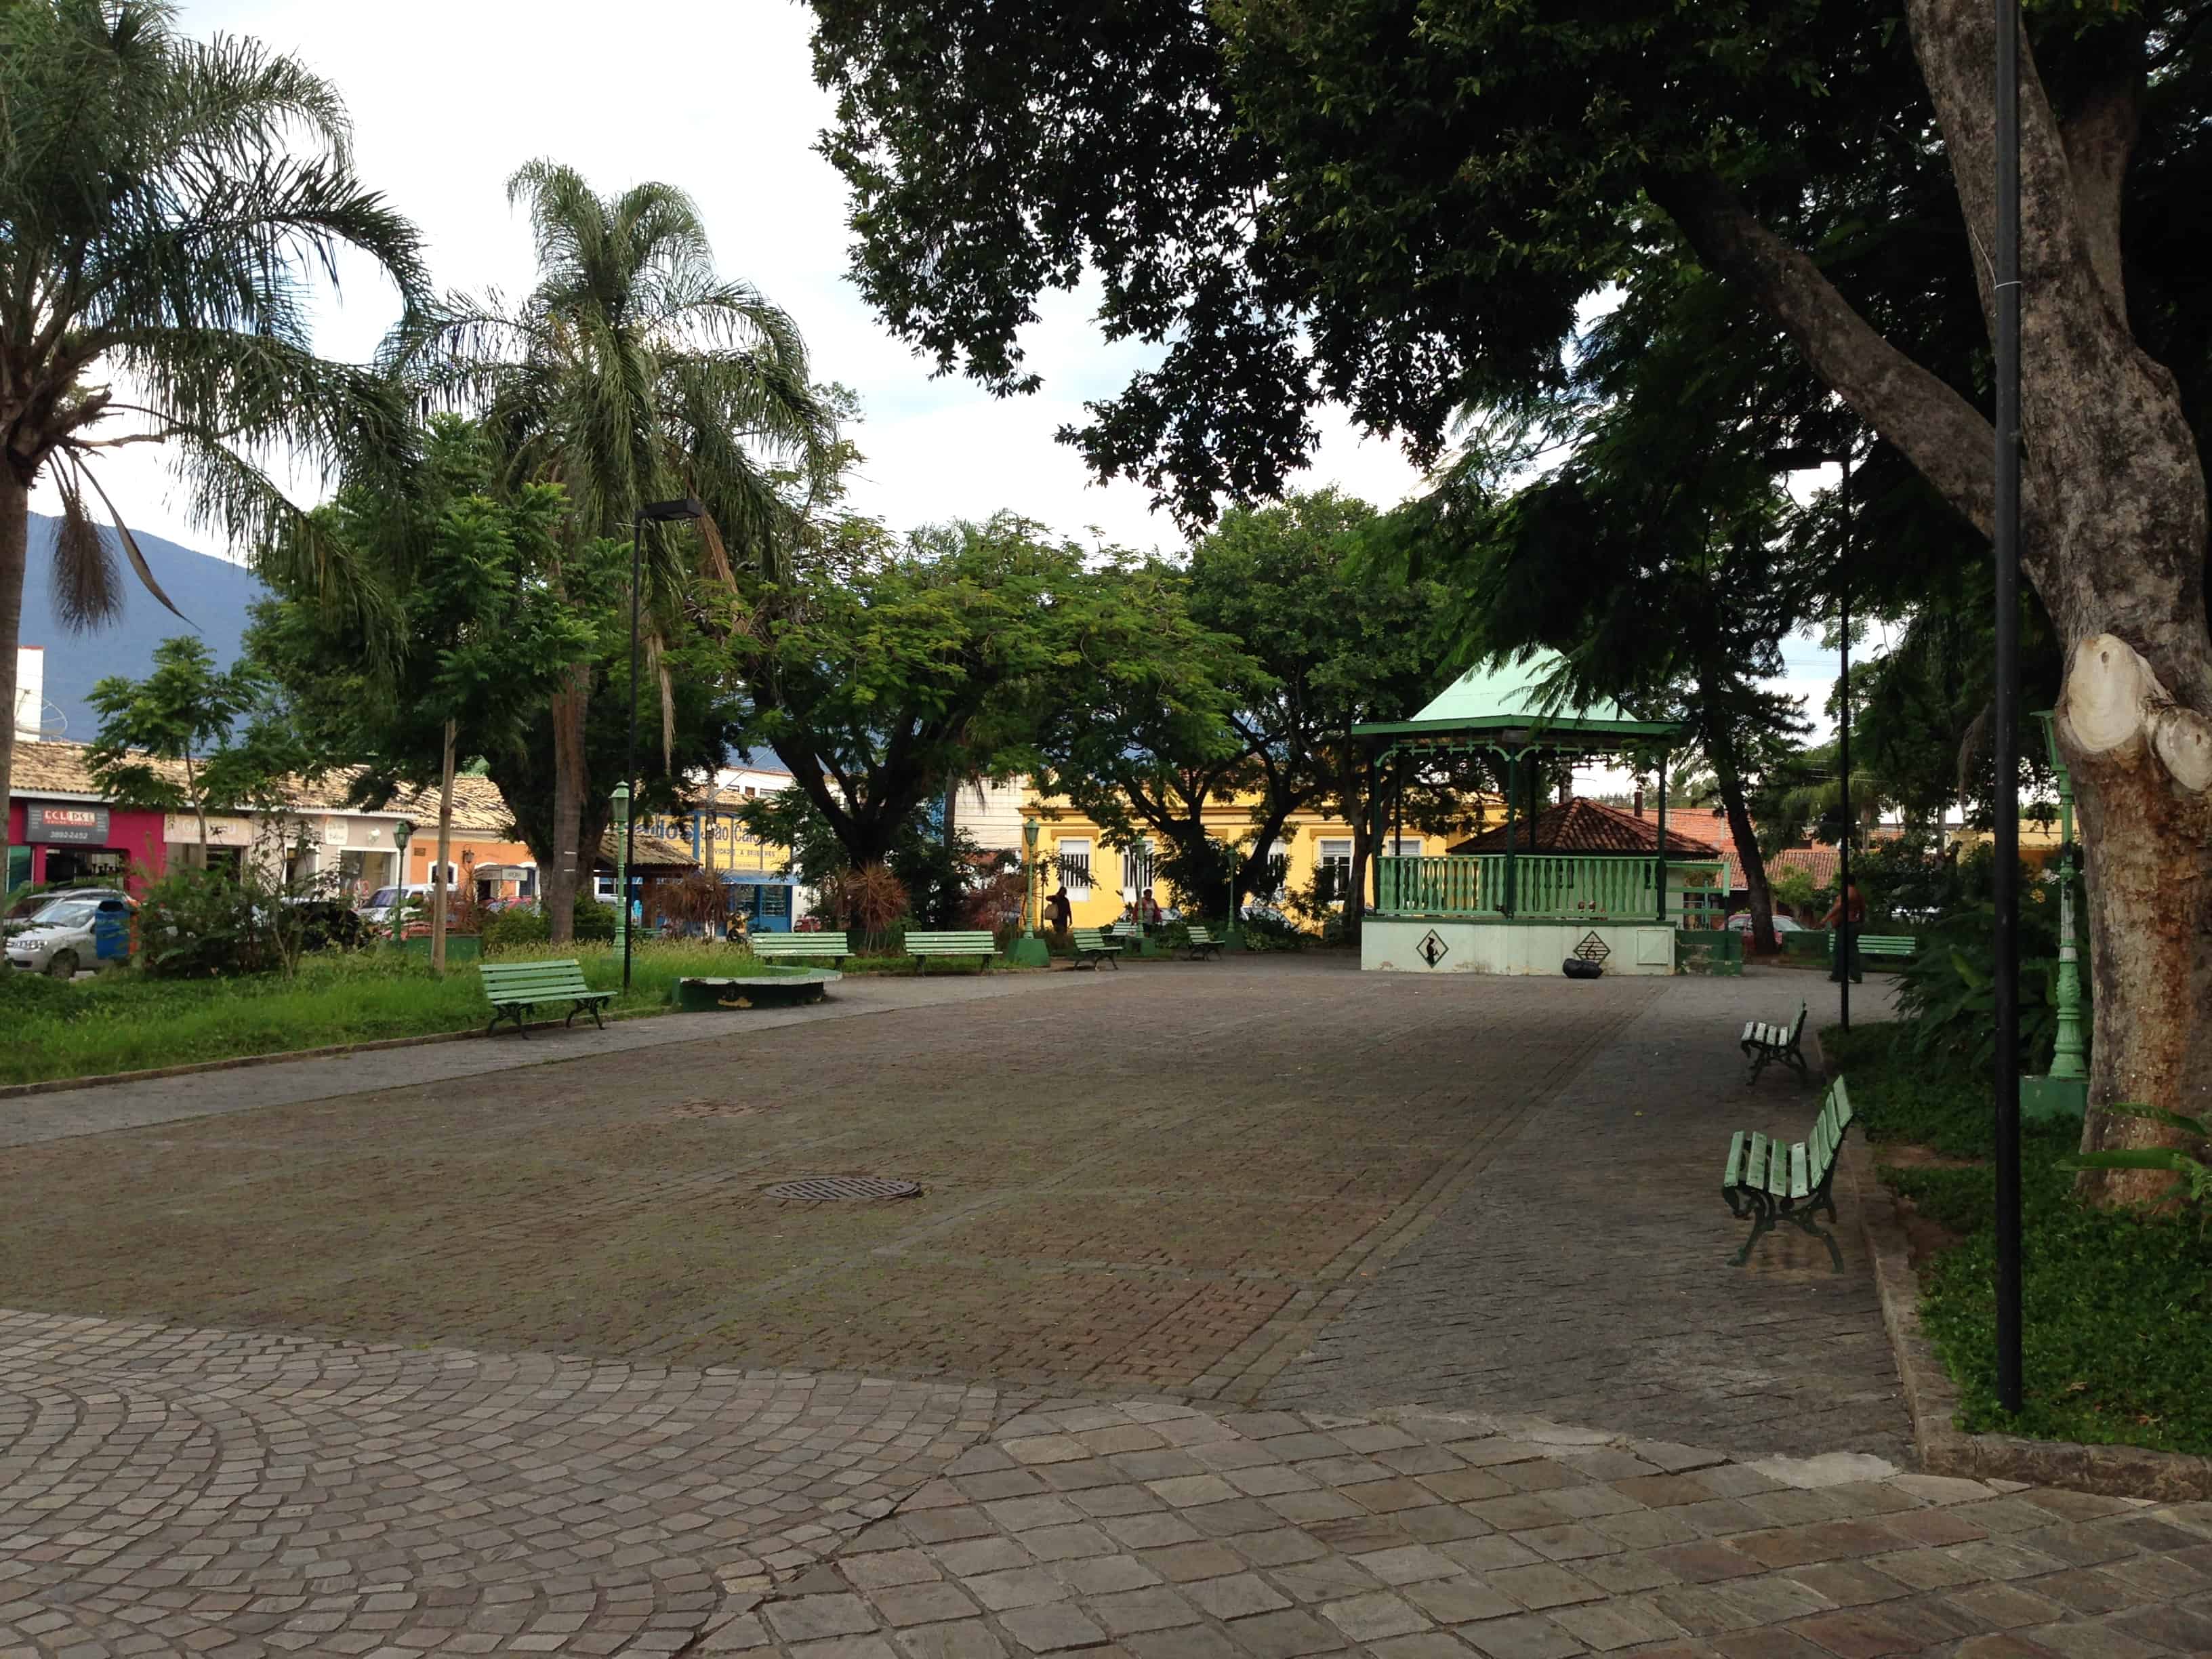 Praça Major João Fernandes in São Sebastião, Brazil